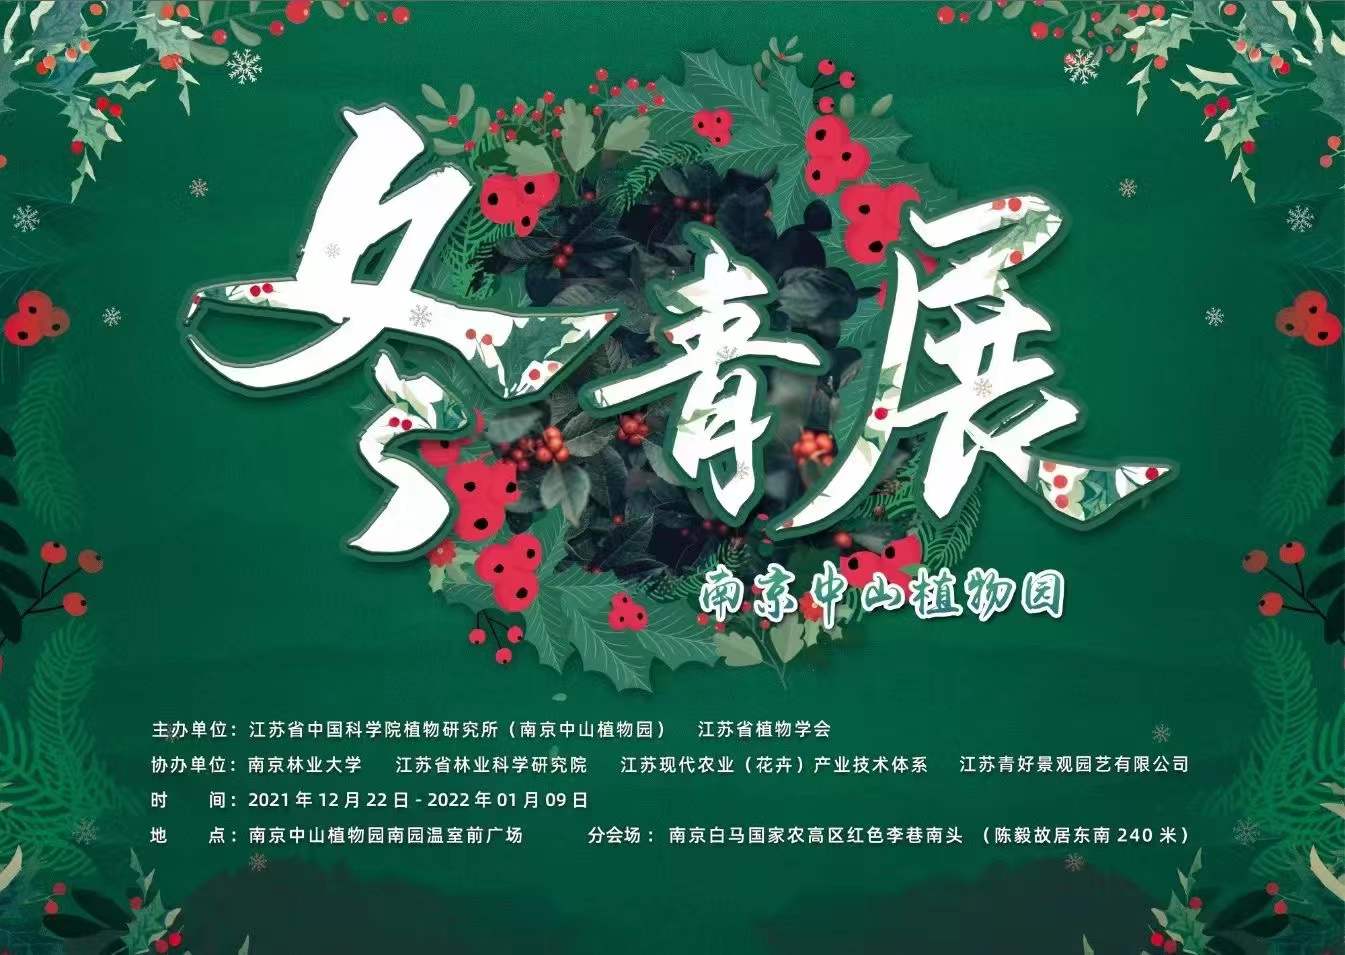 南京中山植物园第二届冬青展开展